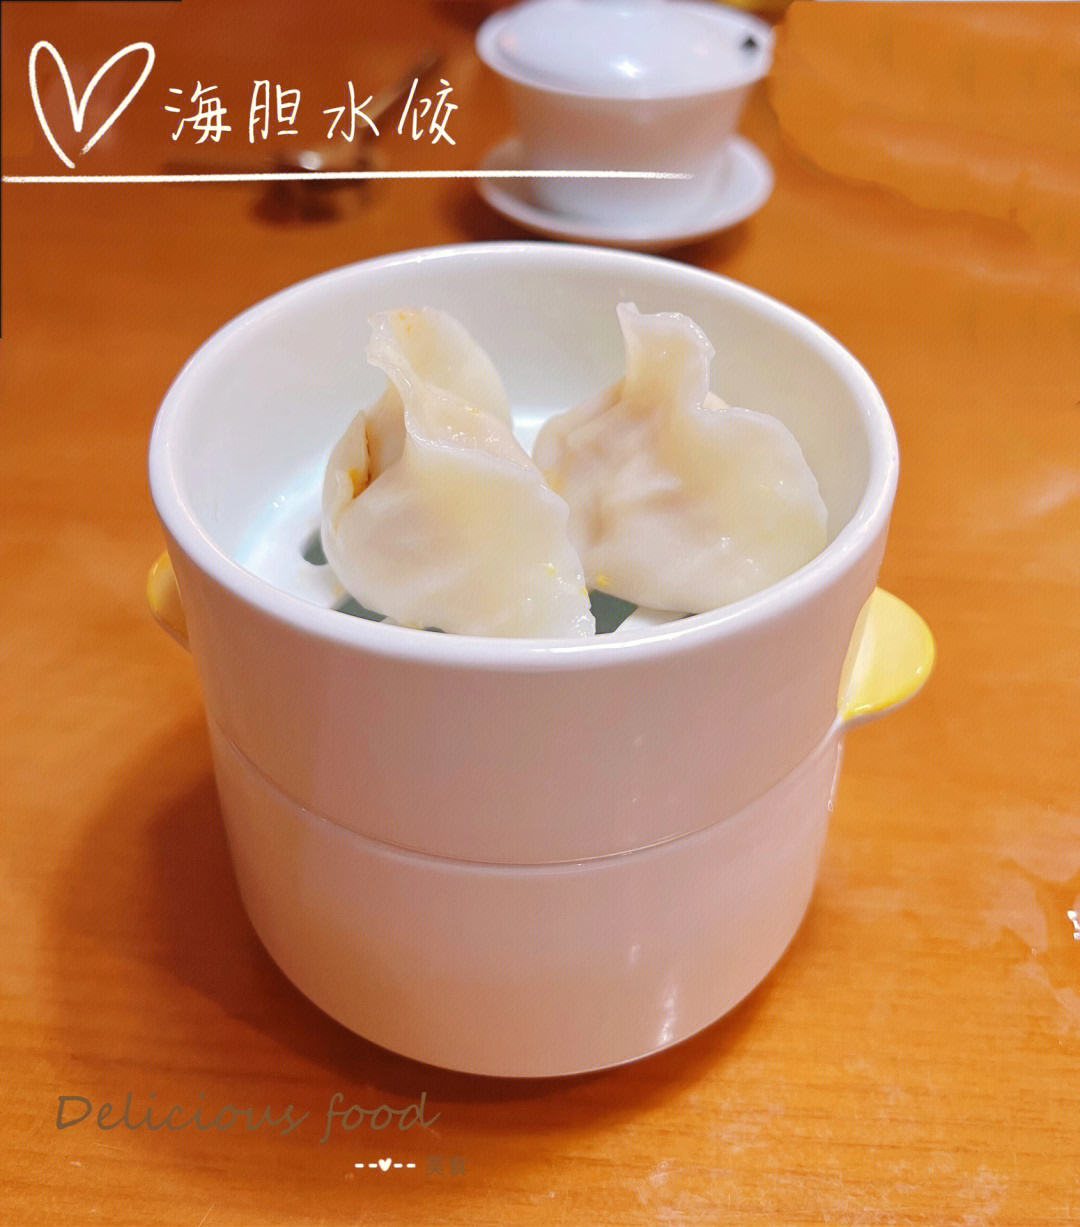 北京美食—喜鼎海胆饺子